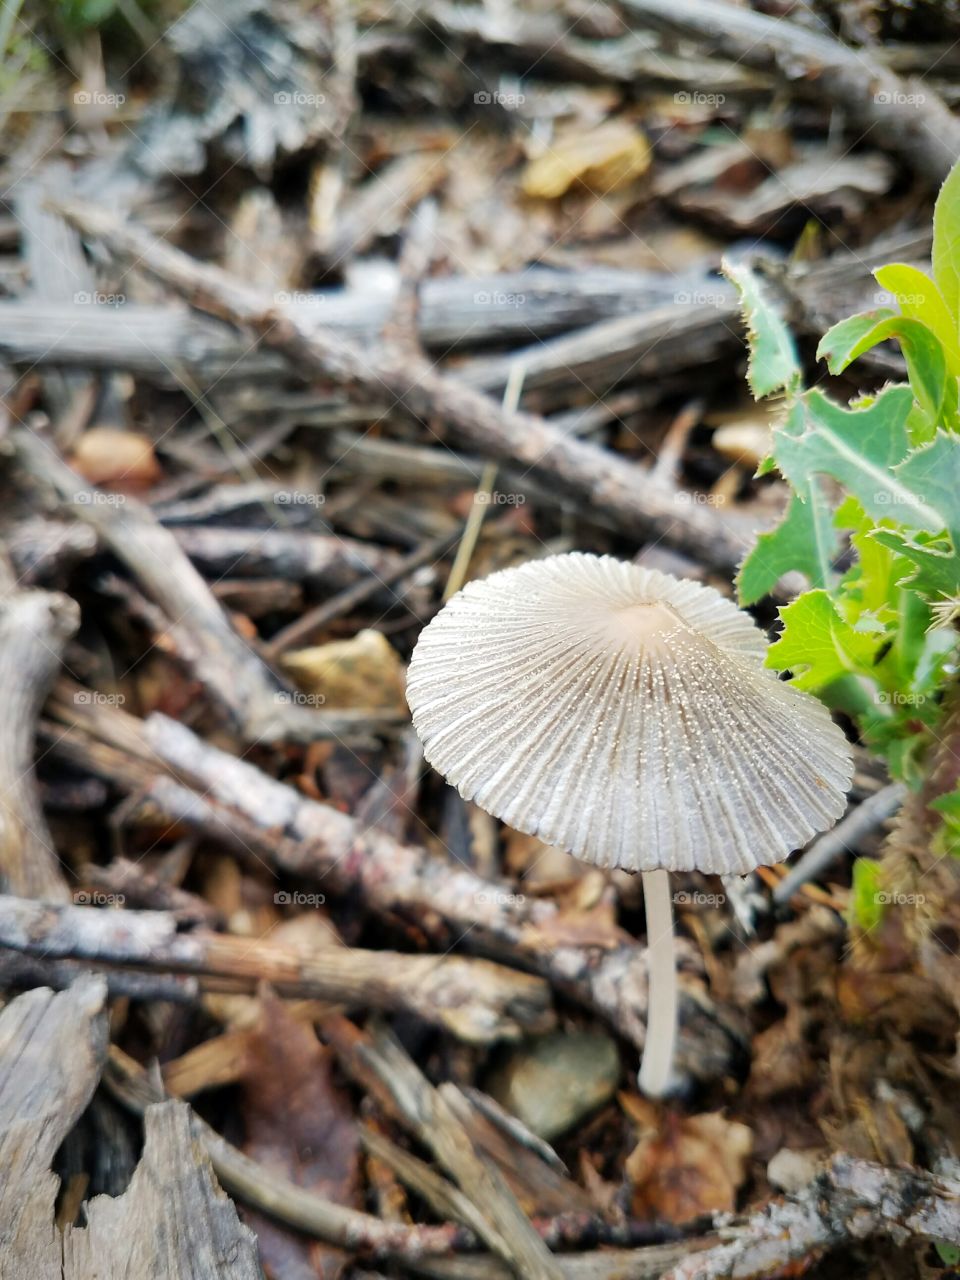 Mushroom top